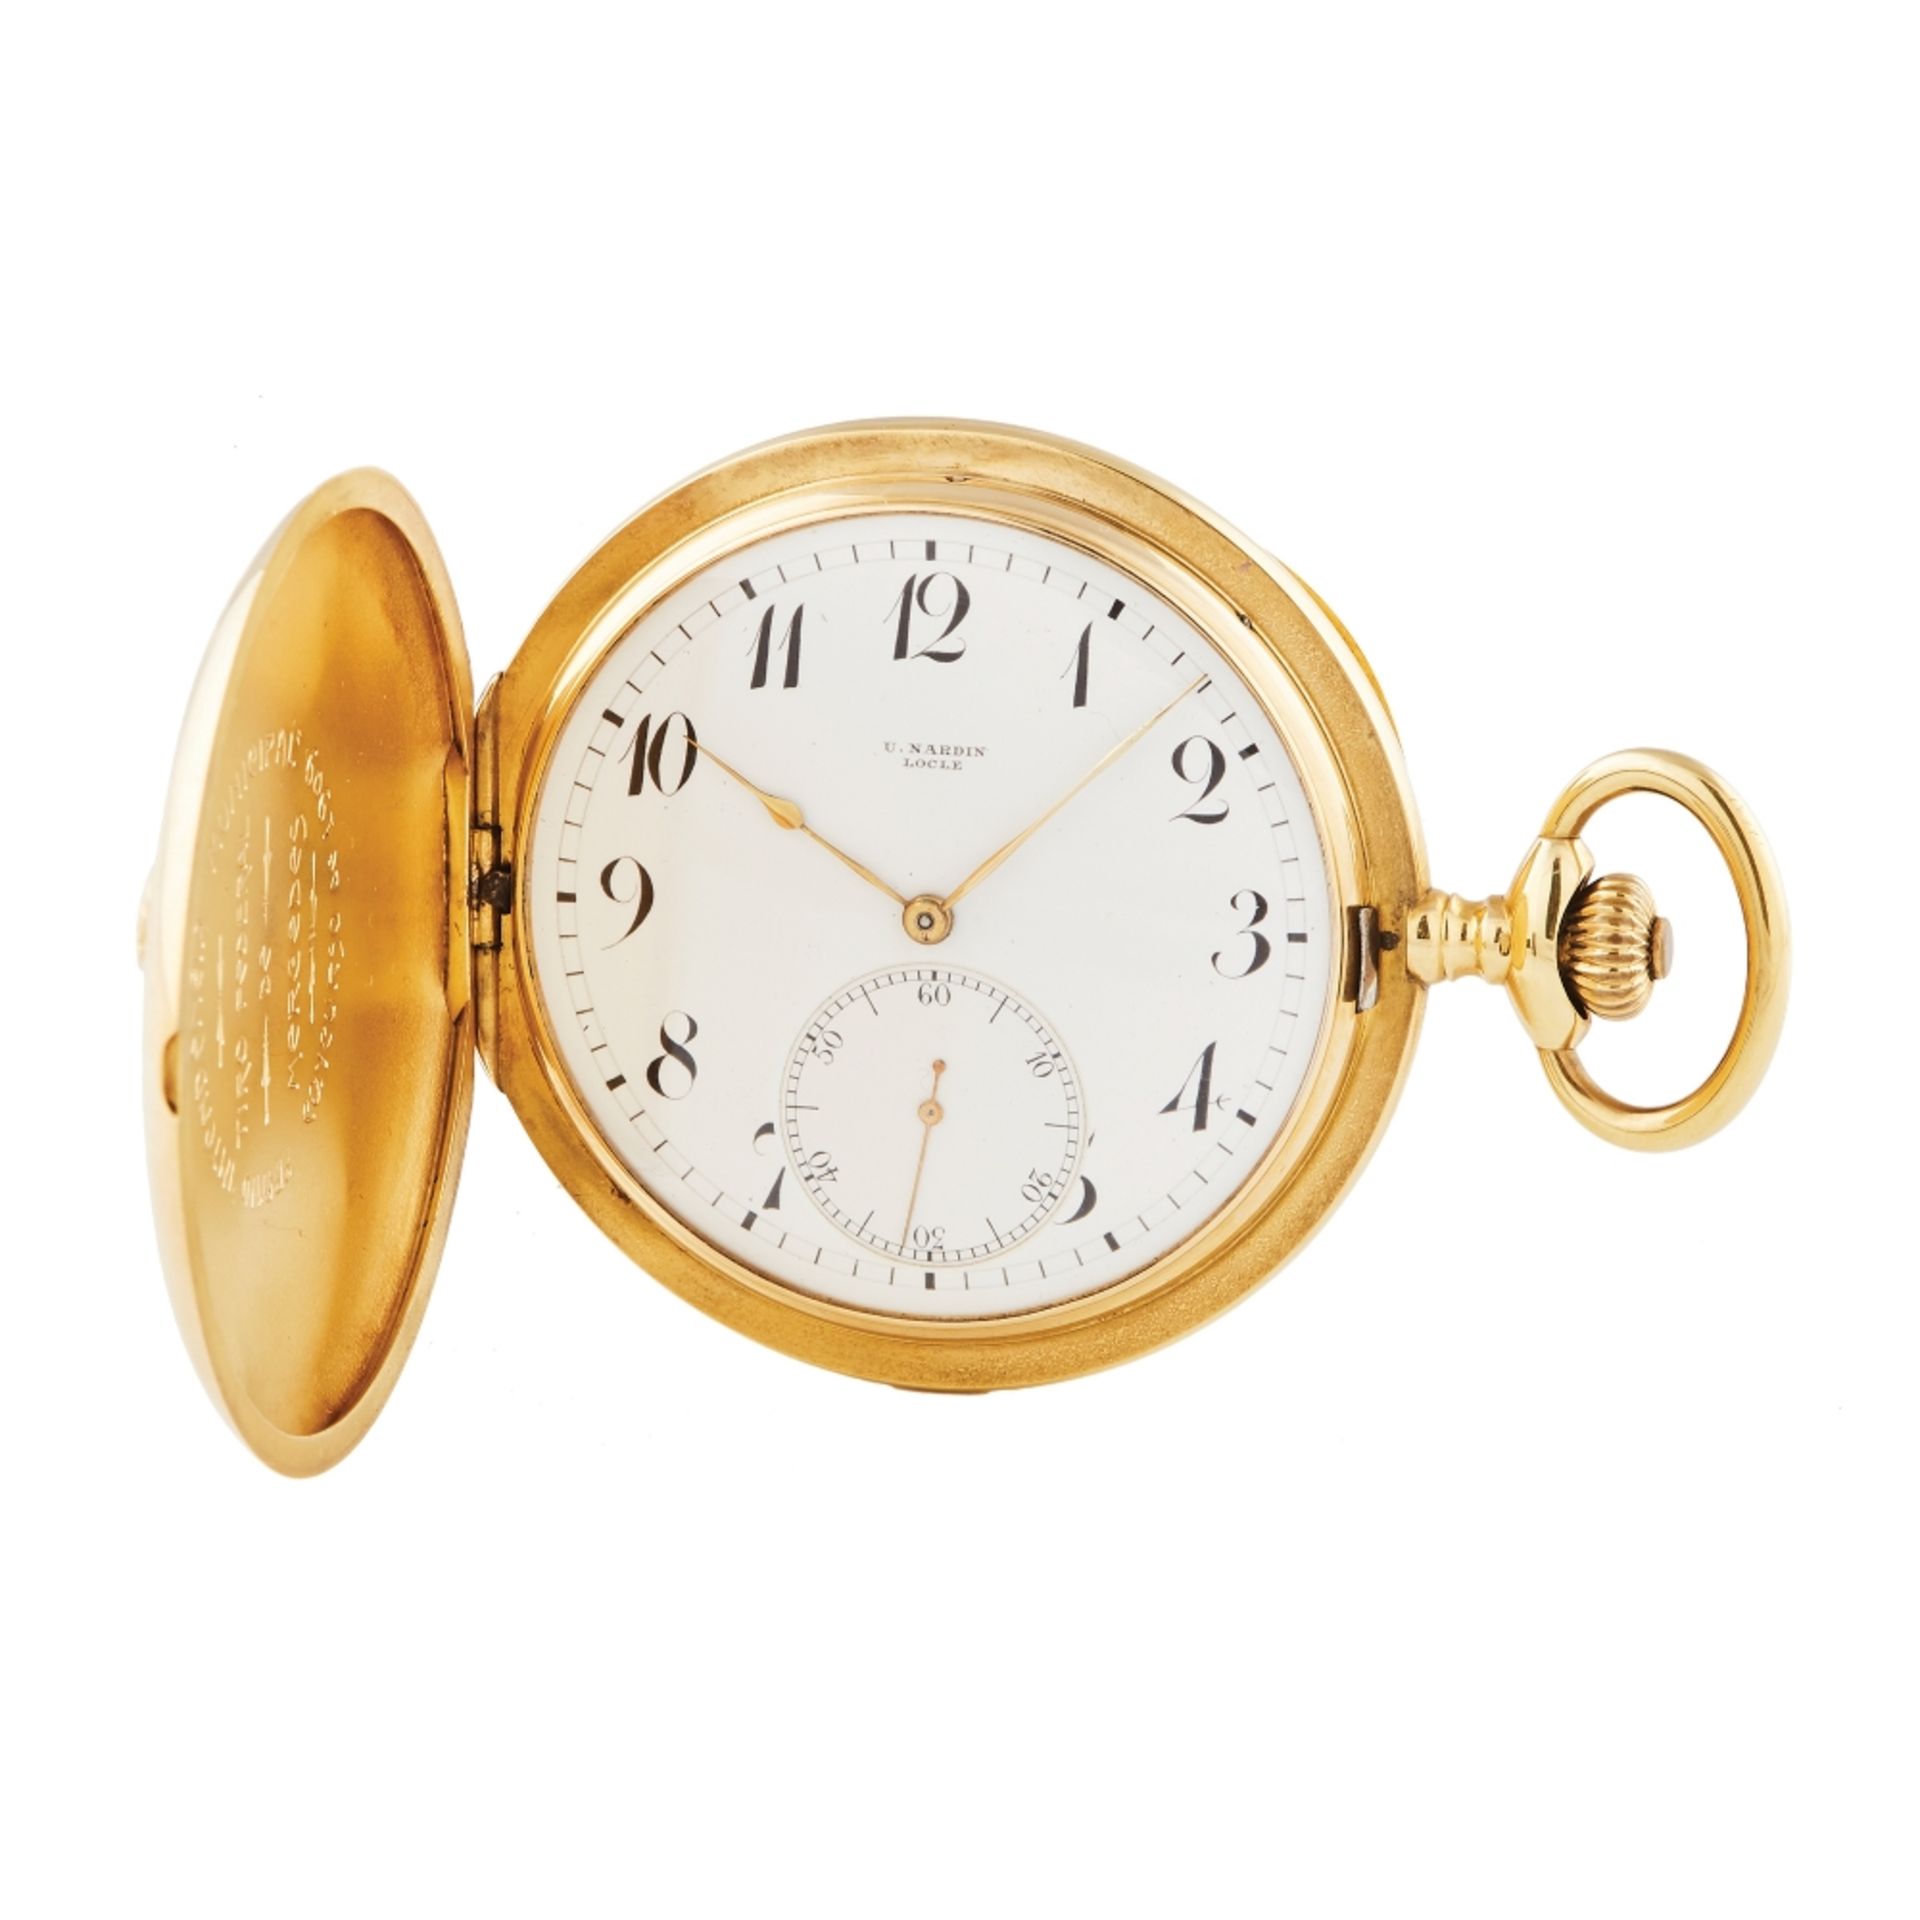 Reloj de bolsillo saboneta Ulysse Nardin en oro, c.1900.